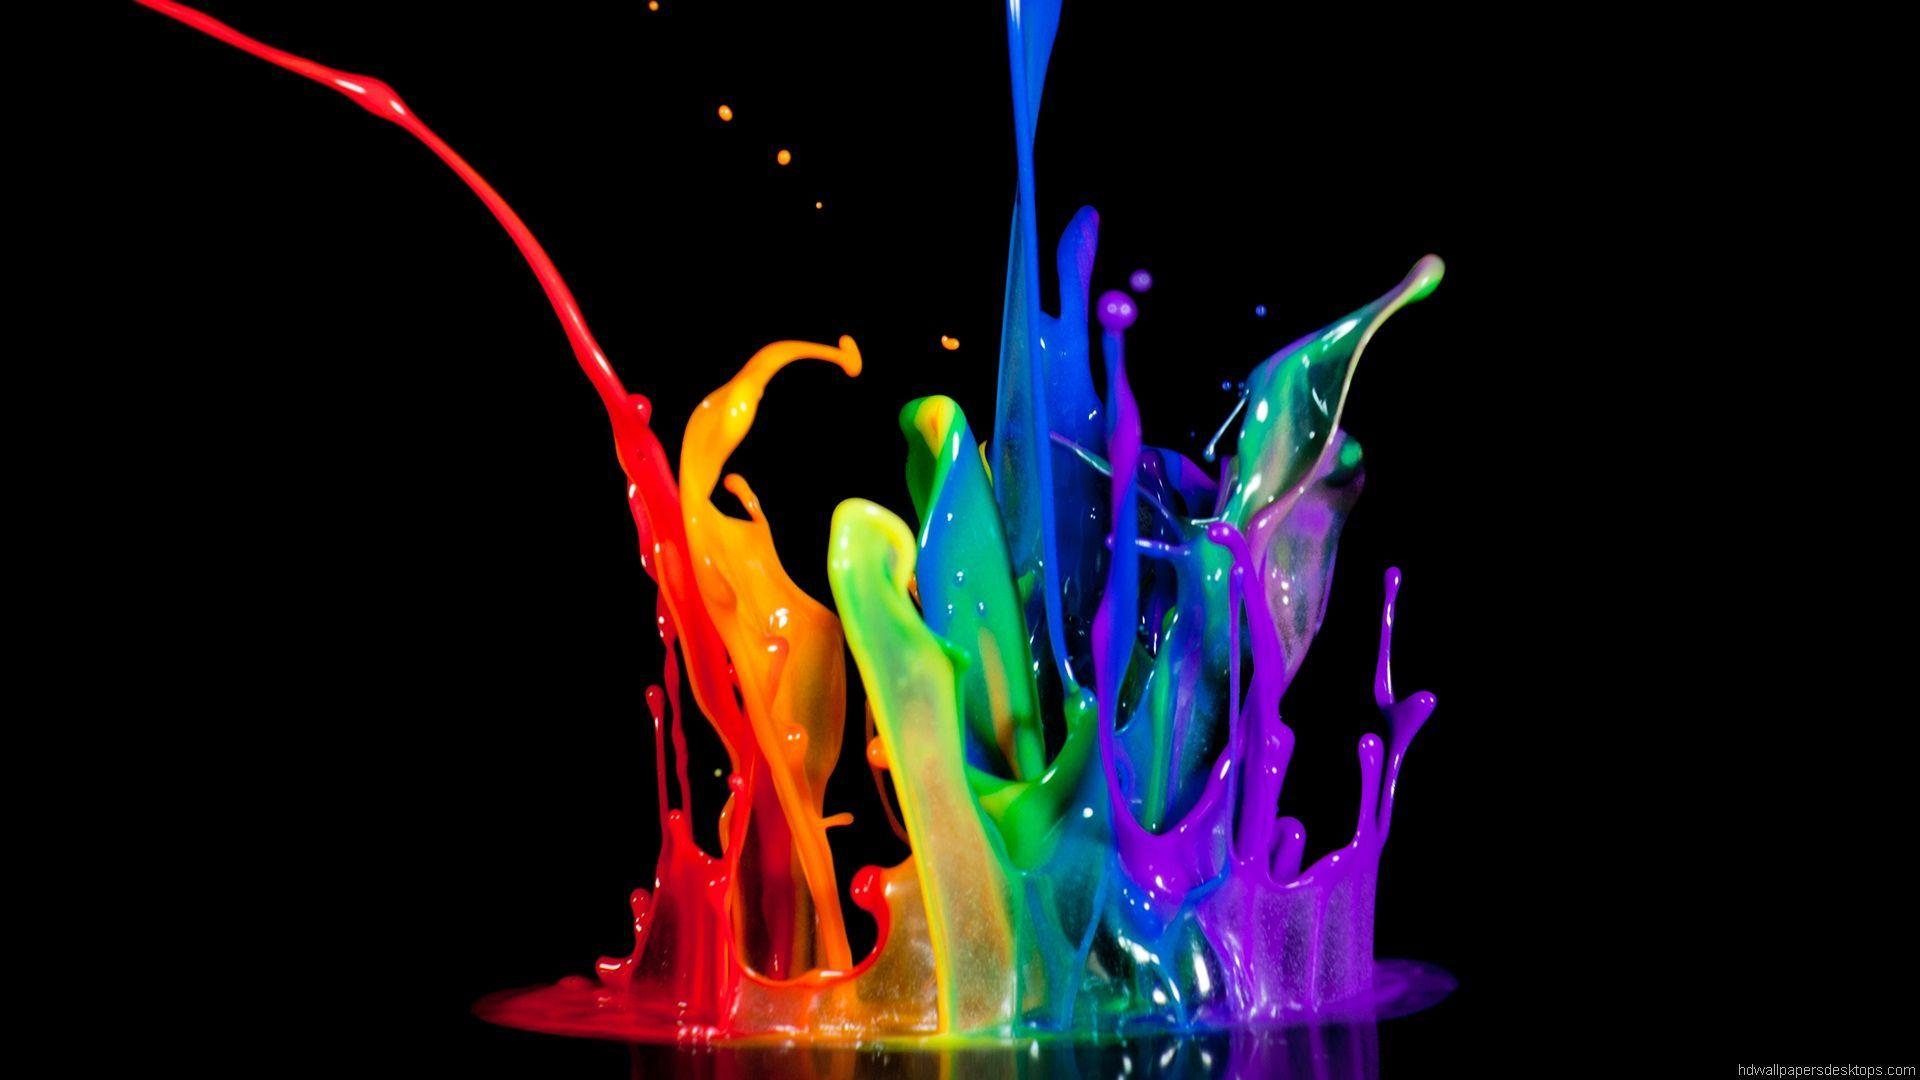 colors of the rainbow. Color HD Wallpaper, HQ Wallpaper, Desktop